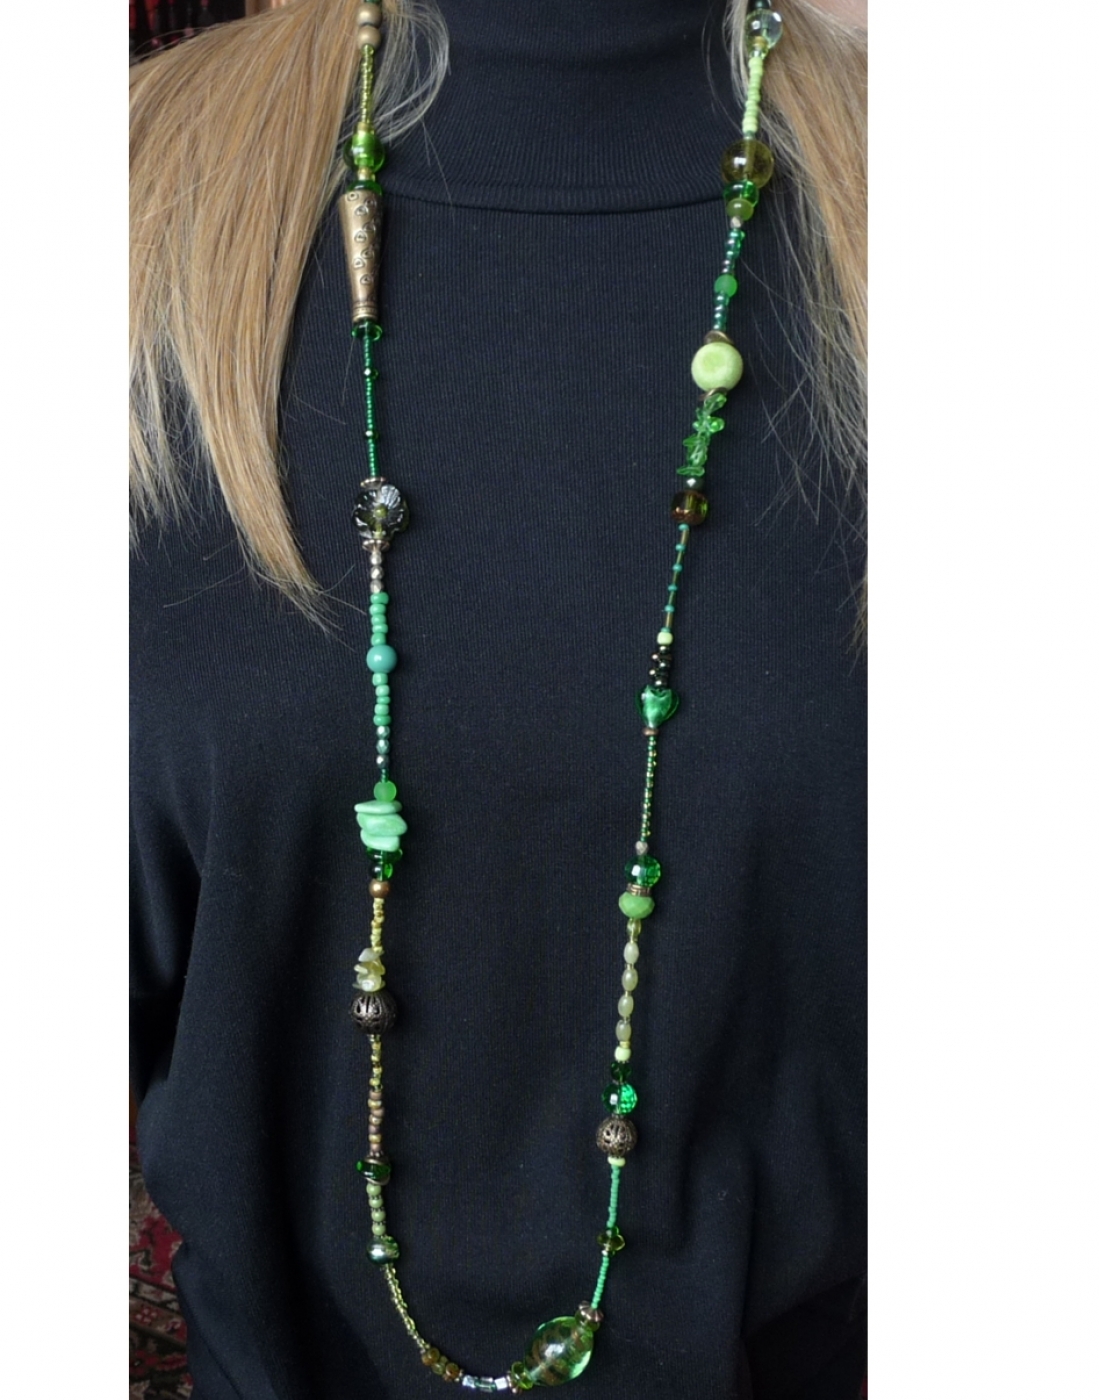 naszyjnik z drobnych szklanych koralików seed beads, kryształków w zielono-starozłotej tonacji. Efektowny i ciekawy, znakomity dla osoby kochającej styl boho